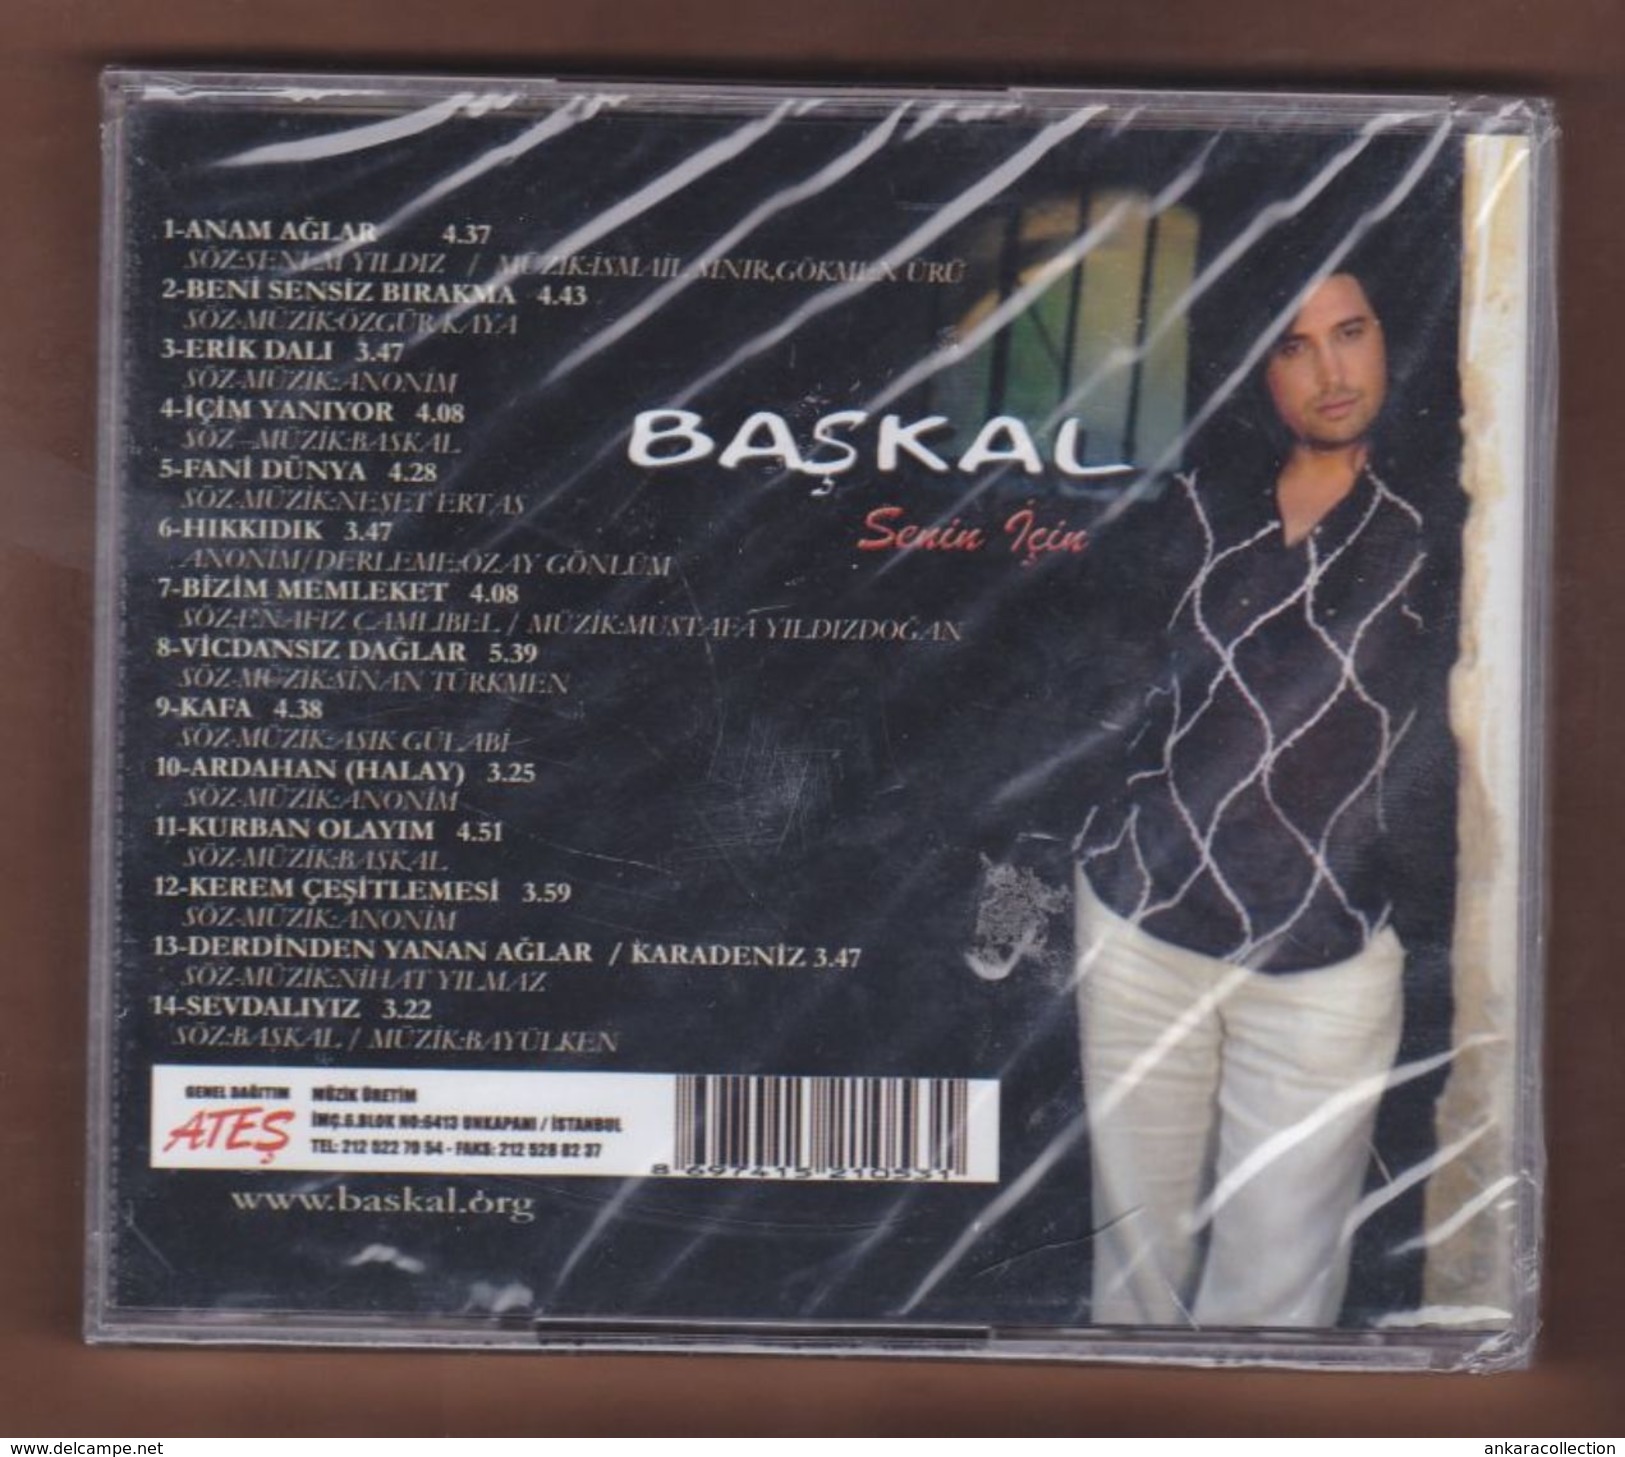 AC - BASKAL SENIN ICIN BRAND NEW TURKISH MUSIC CD - World Music